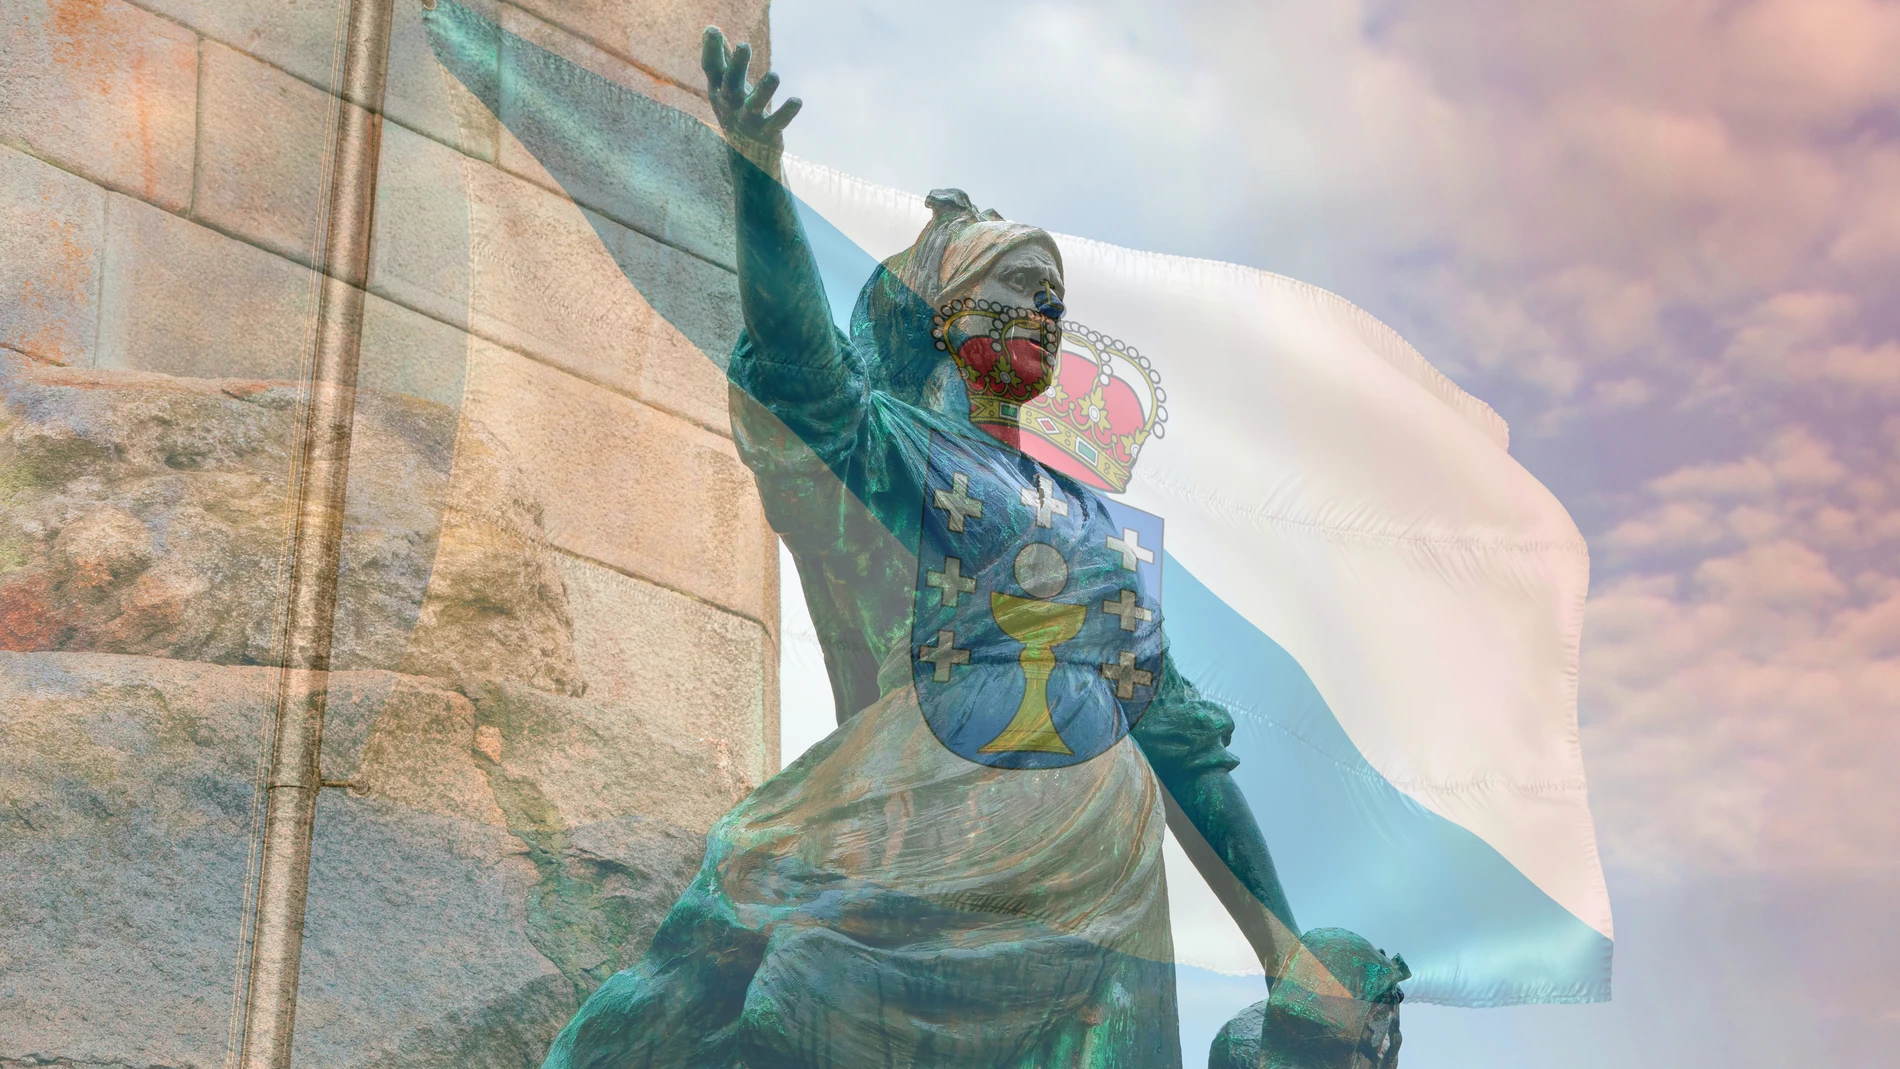 Una estatua de una mujer, parte del monumento a los Héroes de Puente Sampayo en Pontevedra, con una bandera de Galicia sobreexpuesta